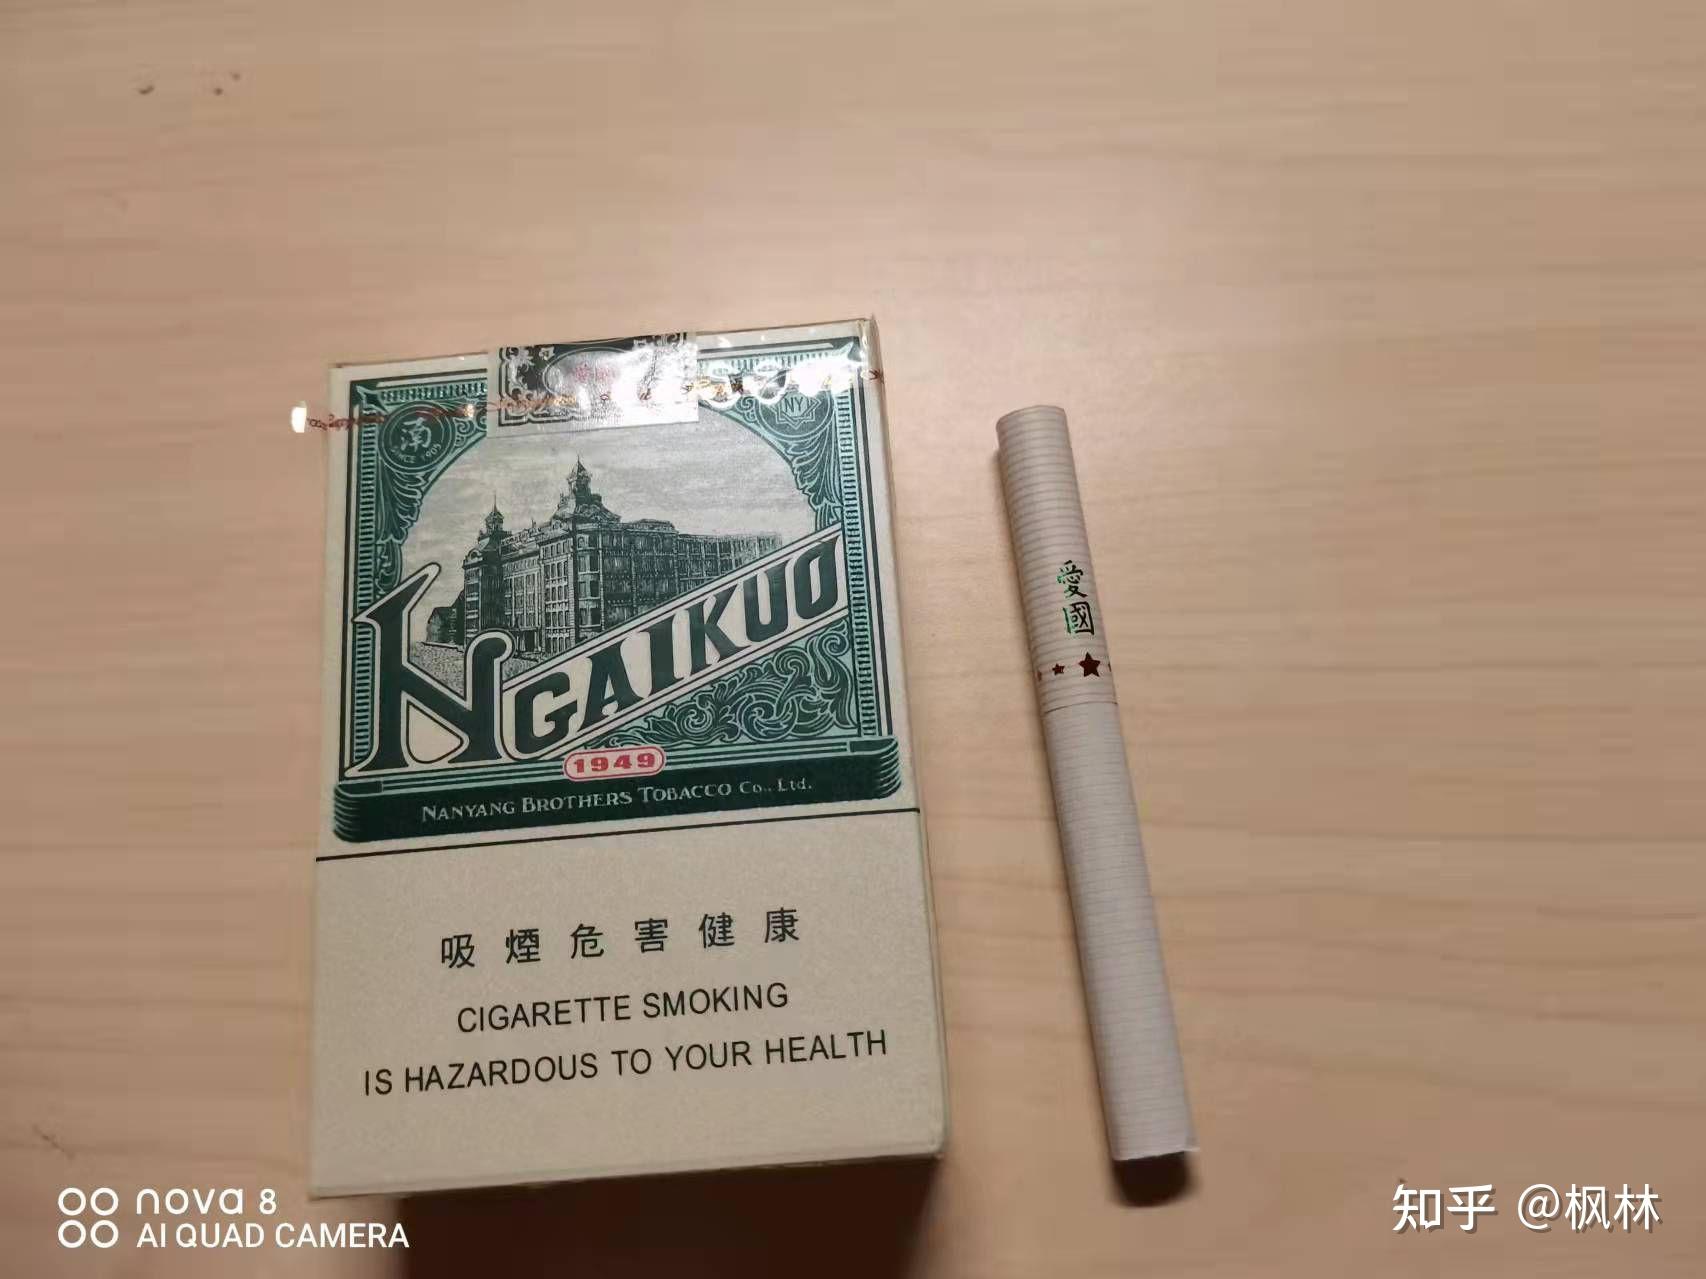 爱国香烟1949细支图片